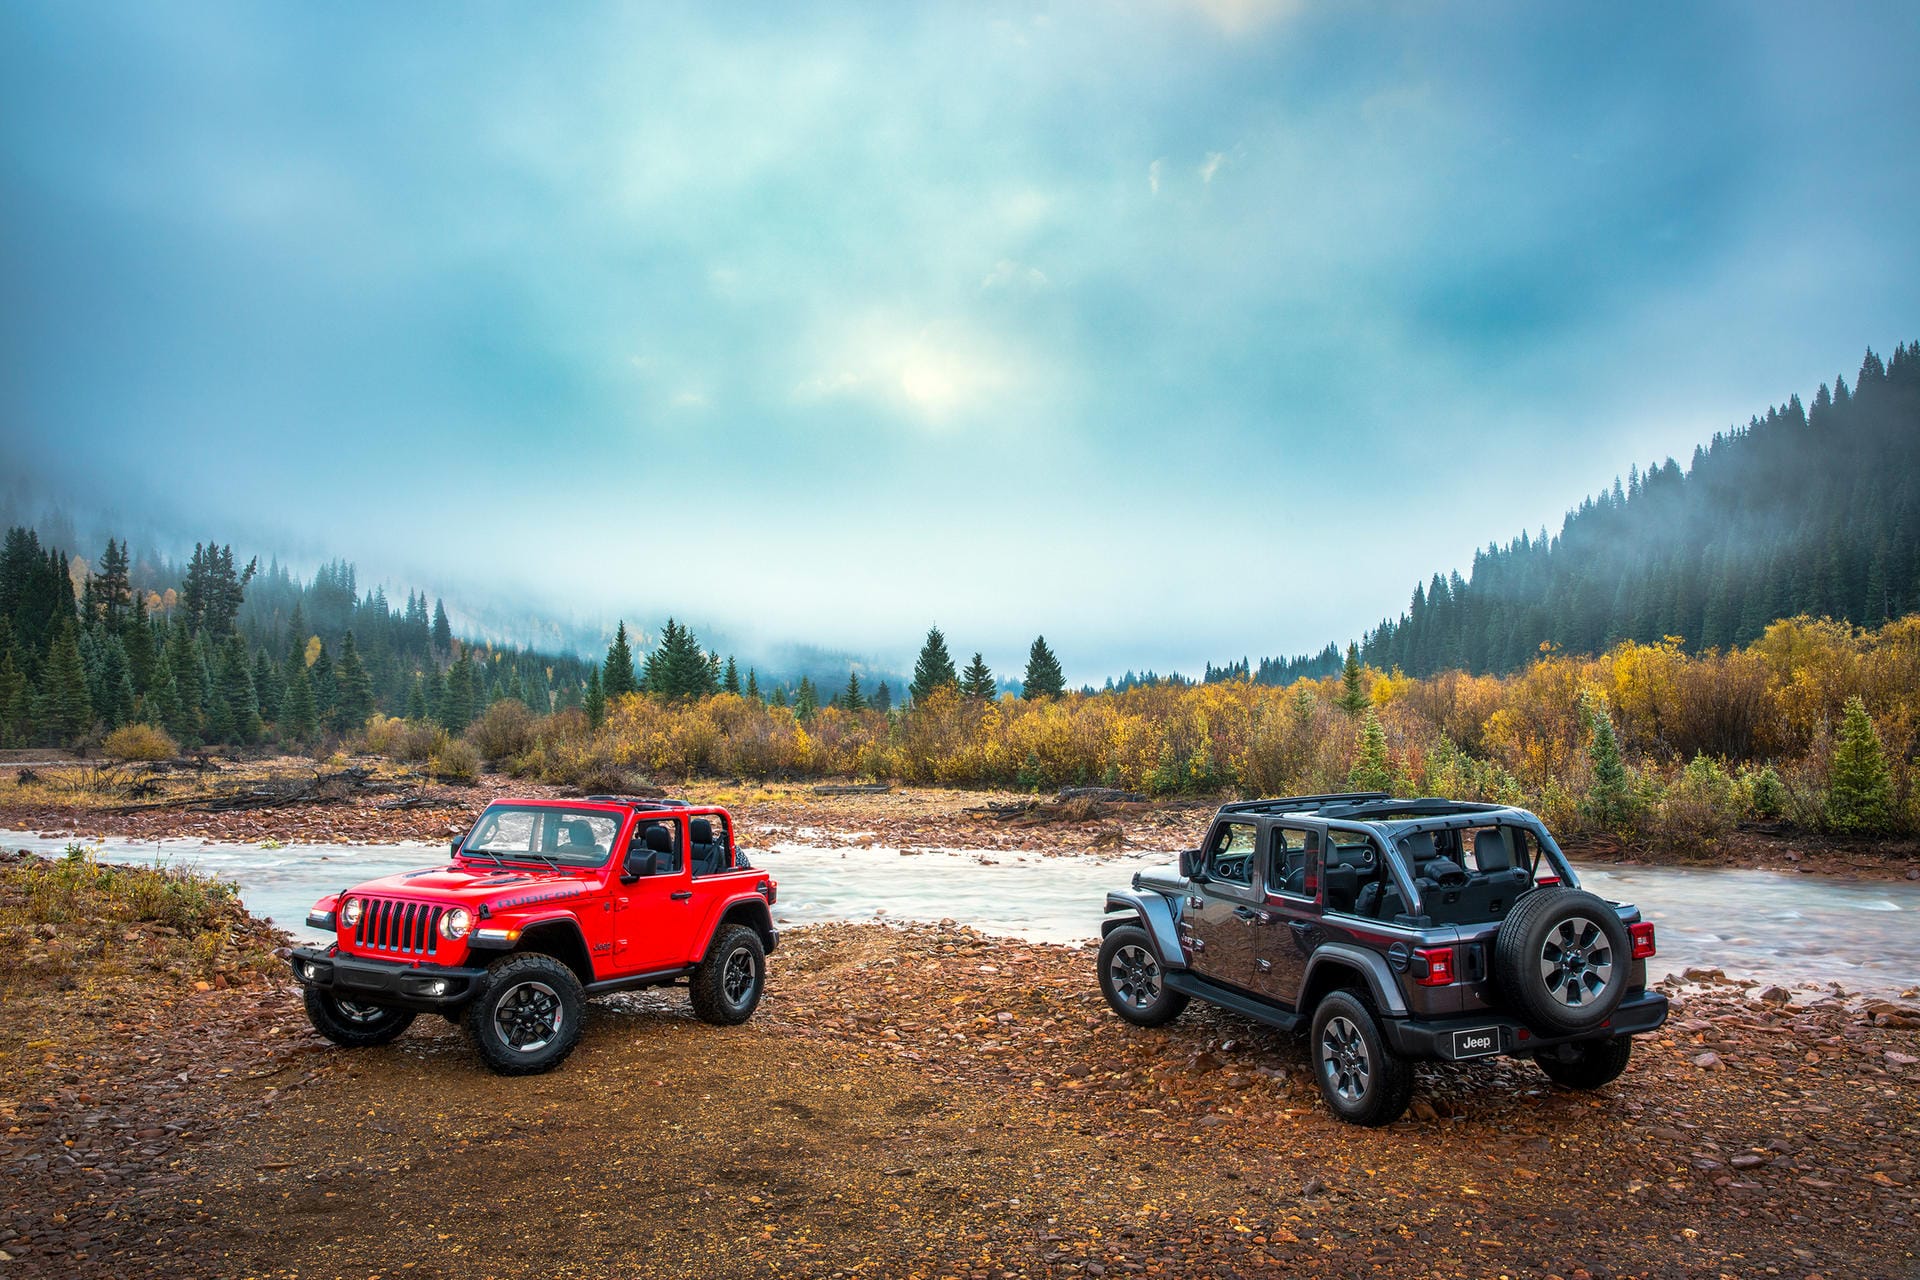 Neuauflage im klassischen Look: Jeep bringt seinen neuen Wrangler in mehreren Varianten, so als "Rubicon" und als "Sahara" (rechts).